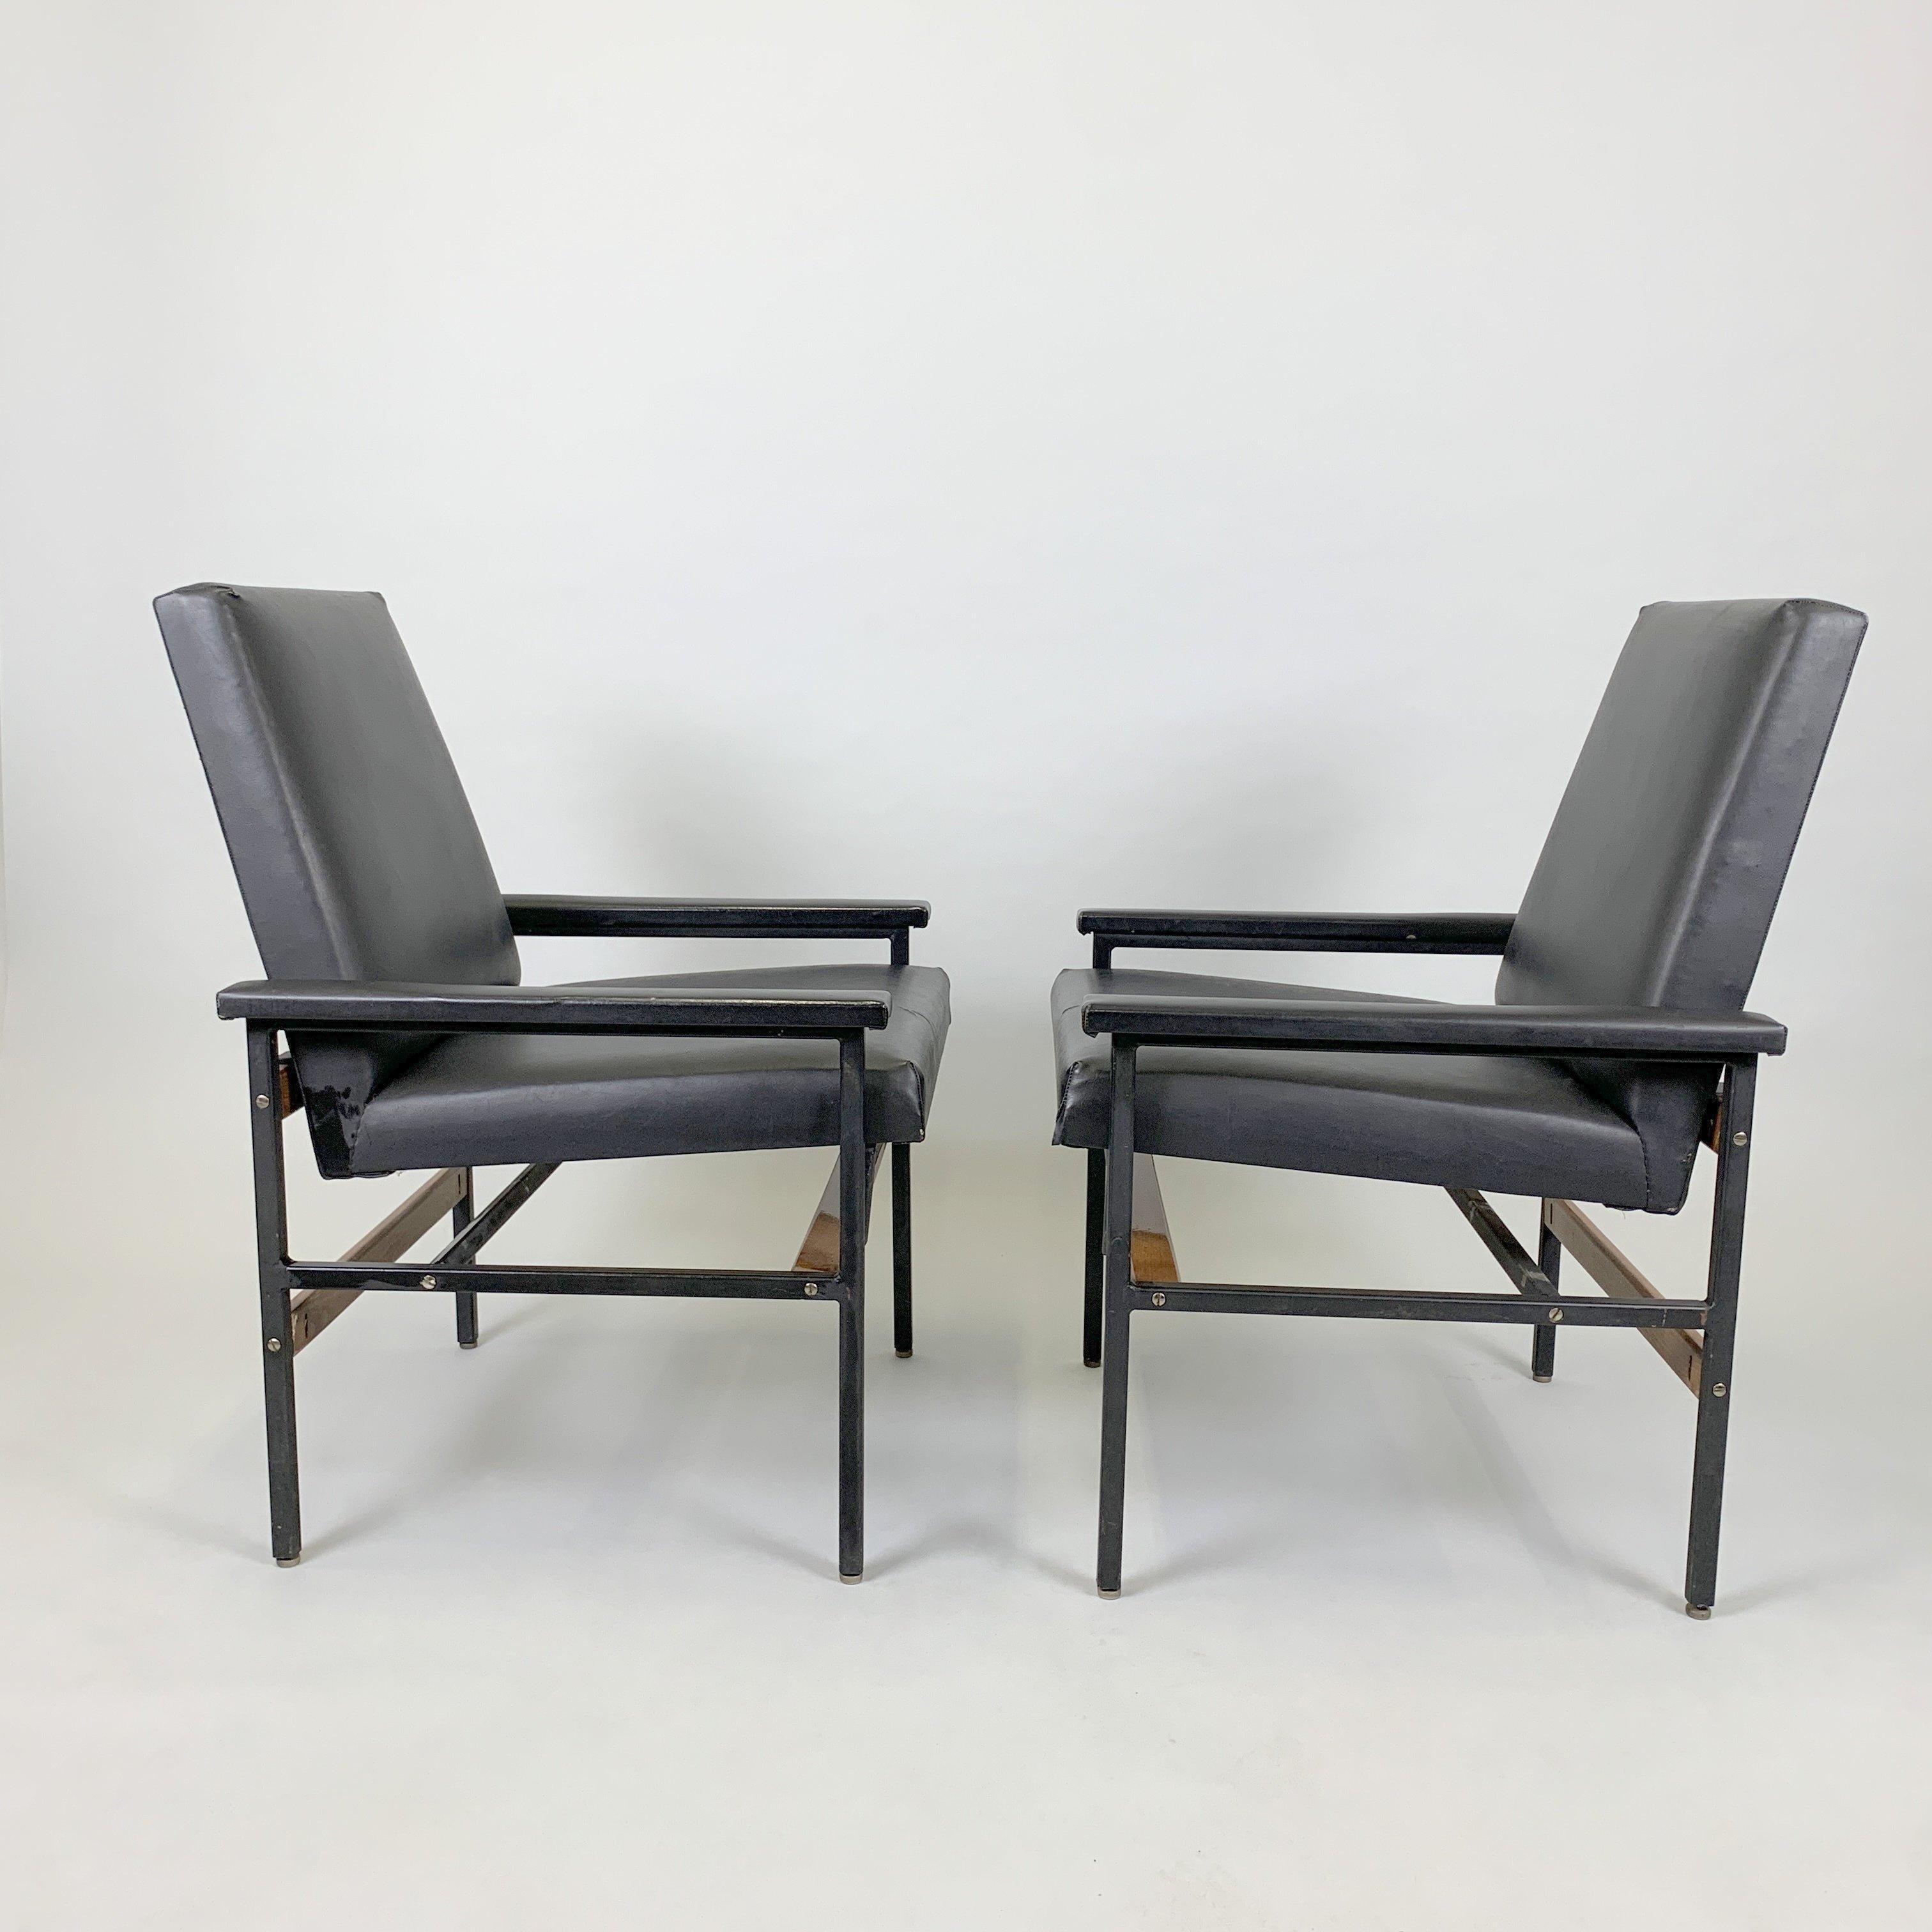 Paar verstellbare Vintage-Sessel aus Metall, Holz und Kunstleder. Produziert in der ehemaligen Tschechoslowakei in den 1970er Jahren. Sie sind in einem sehr guten Vintage-Zustand, abgesehen von den kleinen Rissen in der Polsterung (siehe Foto).